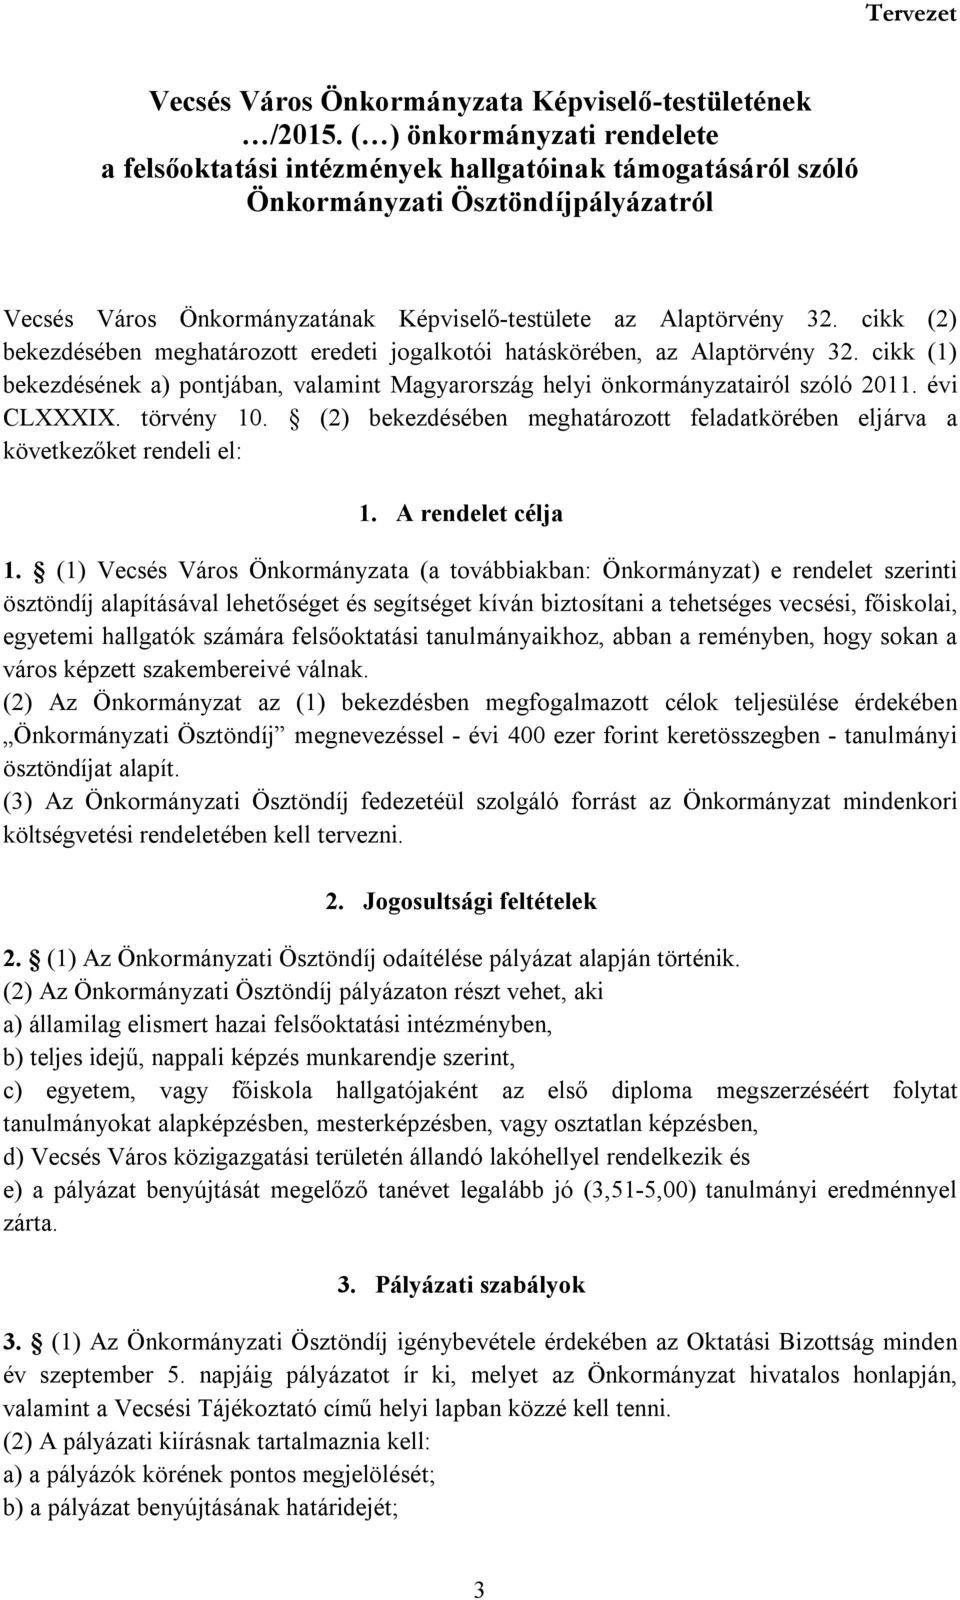 cikk (2) bekezdésében meghatározott eredeti jogalkotói hatáskörében, az Alaptörvény 32. cikk (1) bekezdésének a) pontjában, valamint Magyarország helyi önkormányzatairól szóló 2011. évi CLXXXIX.